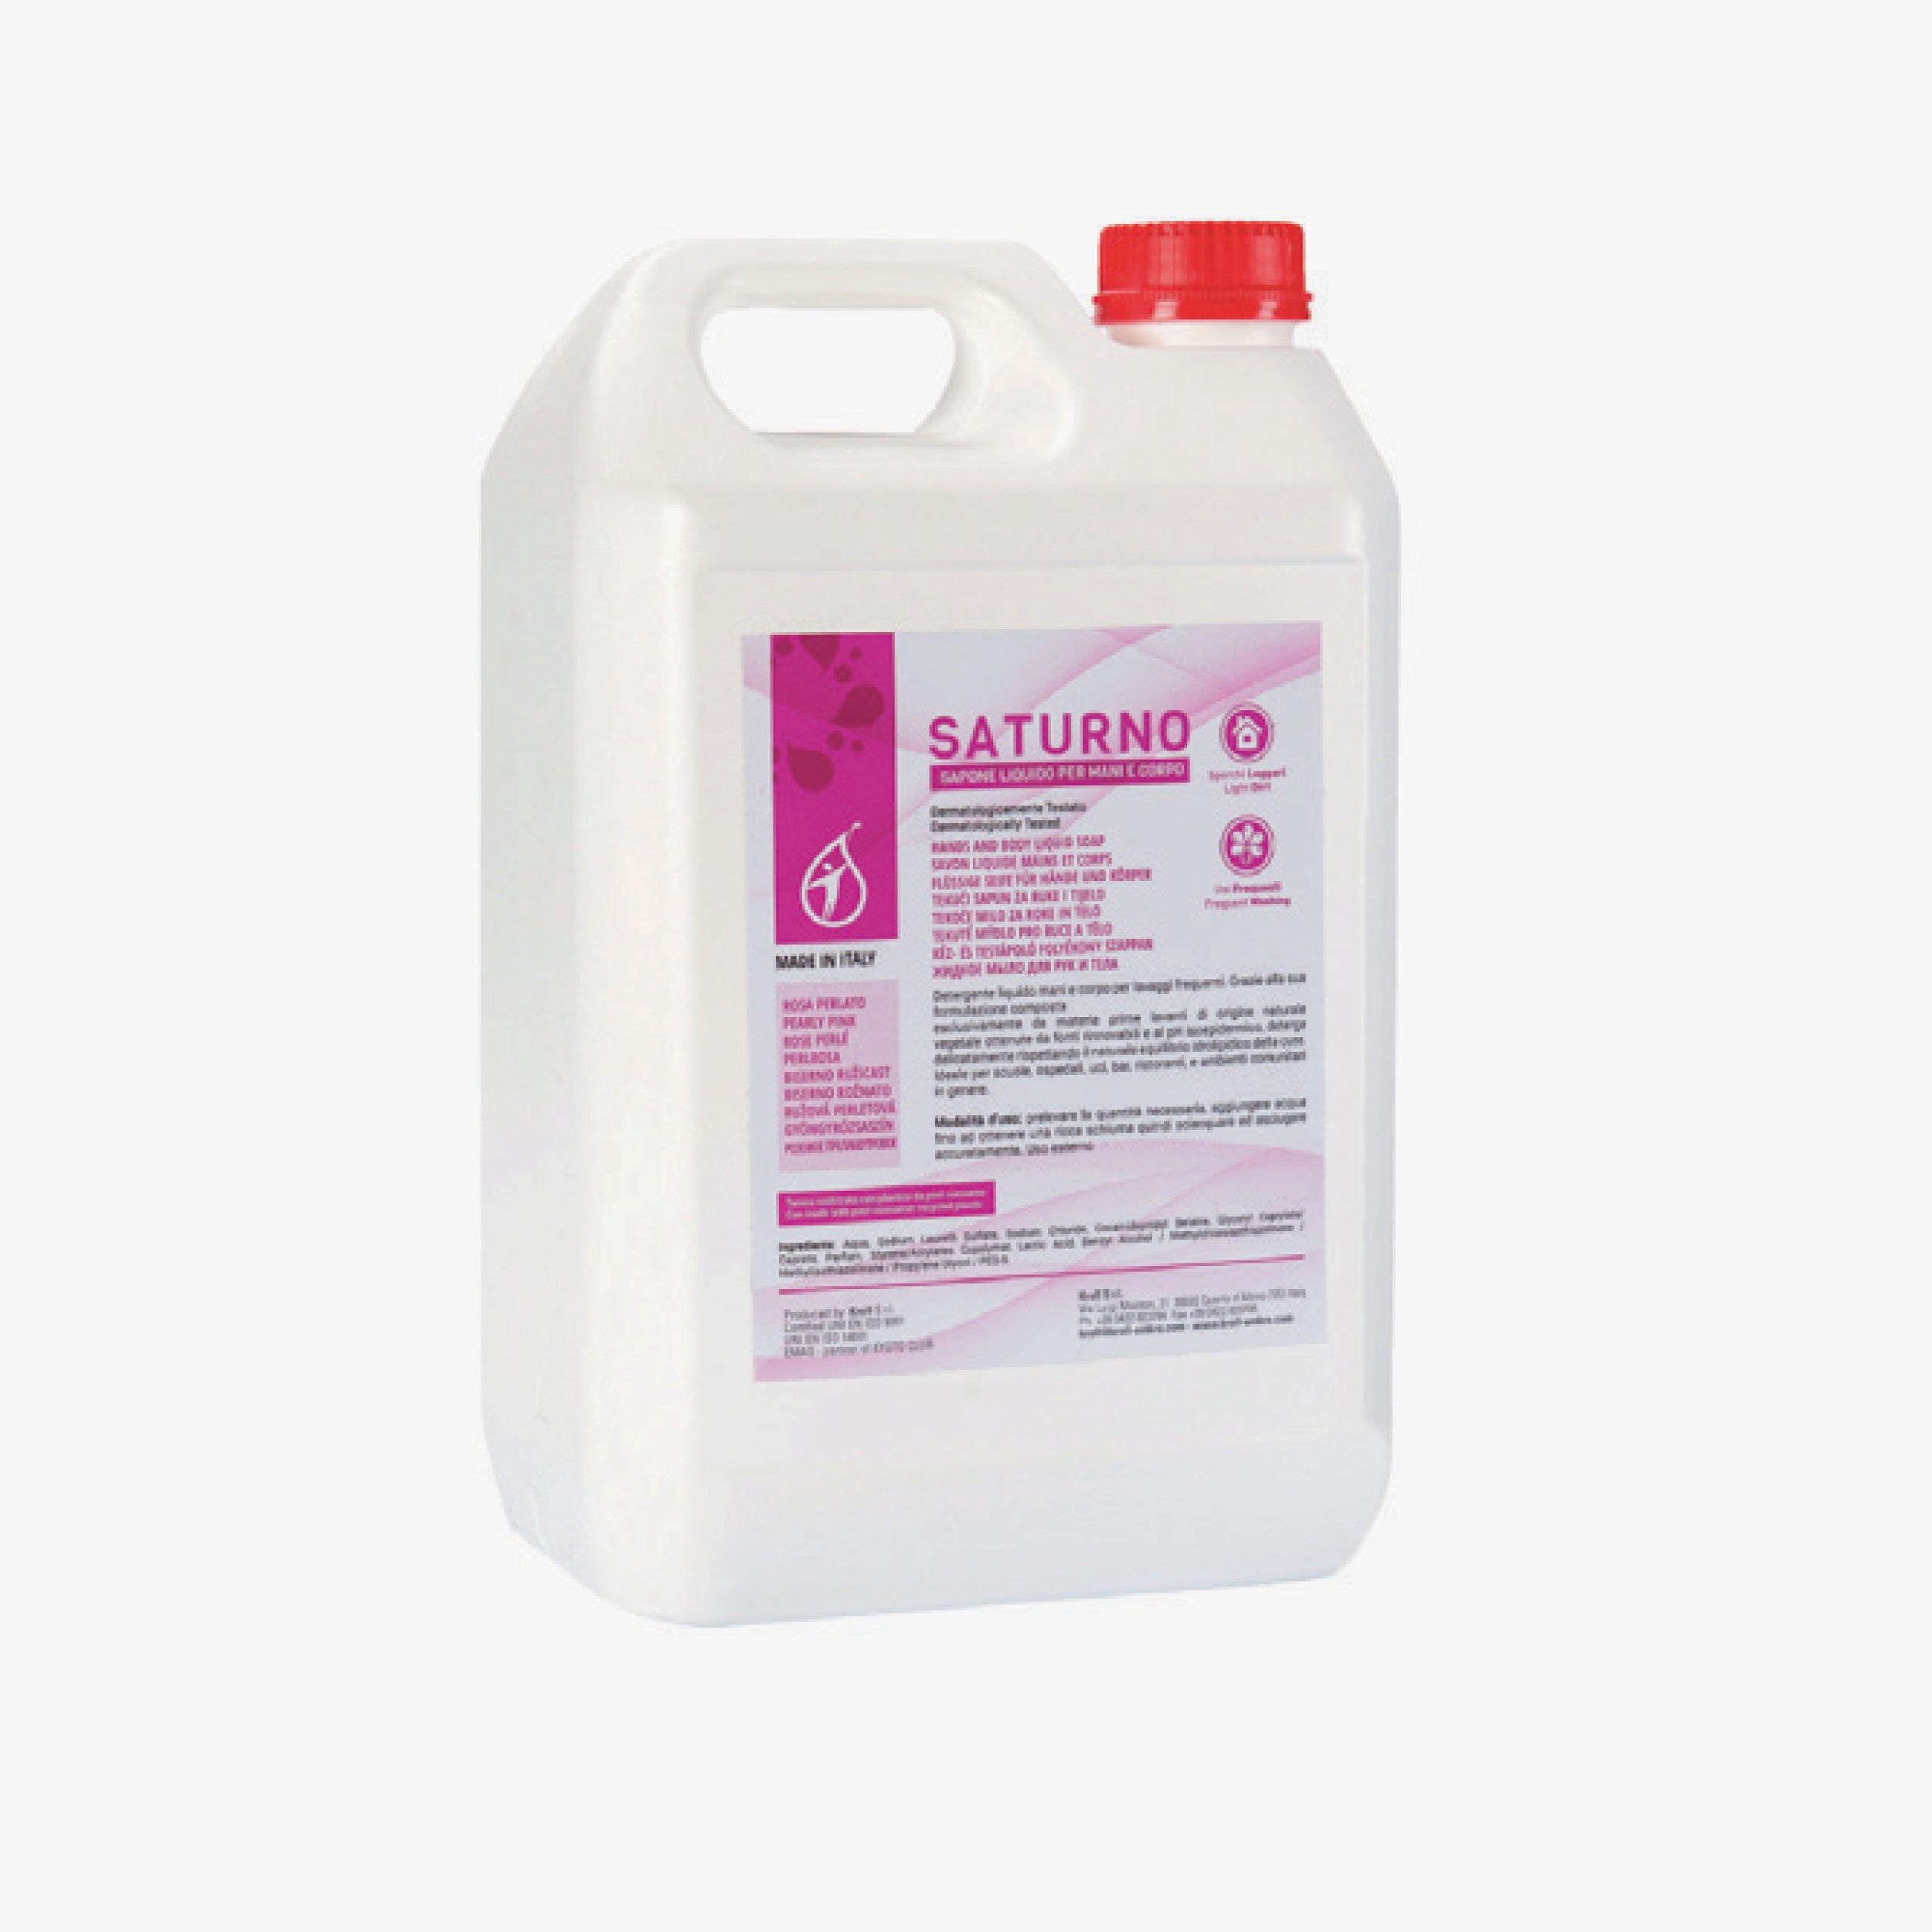 3122 - Saturno liquid soap pink can 5L - 1pcs